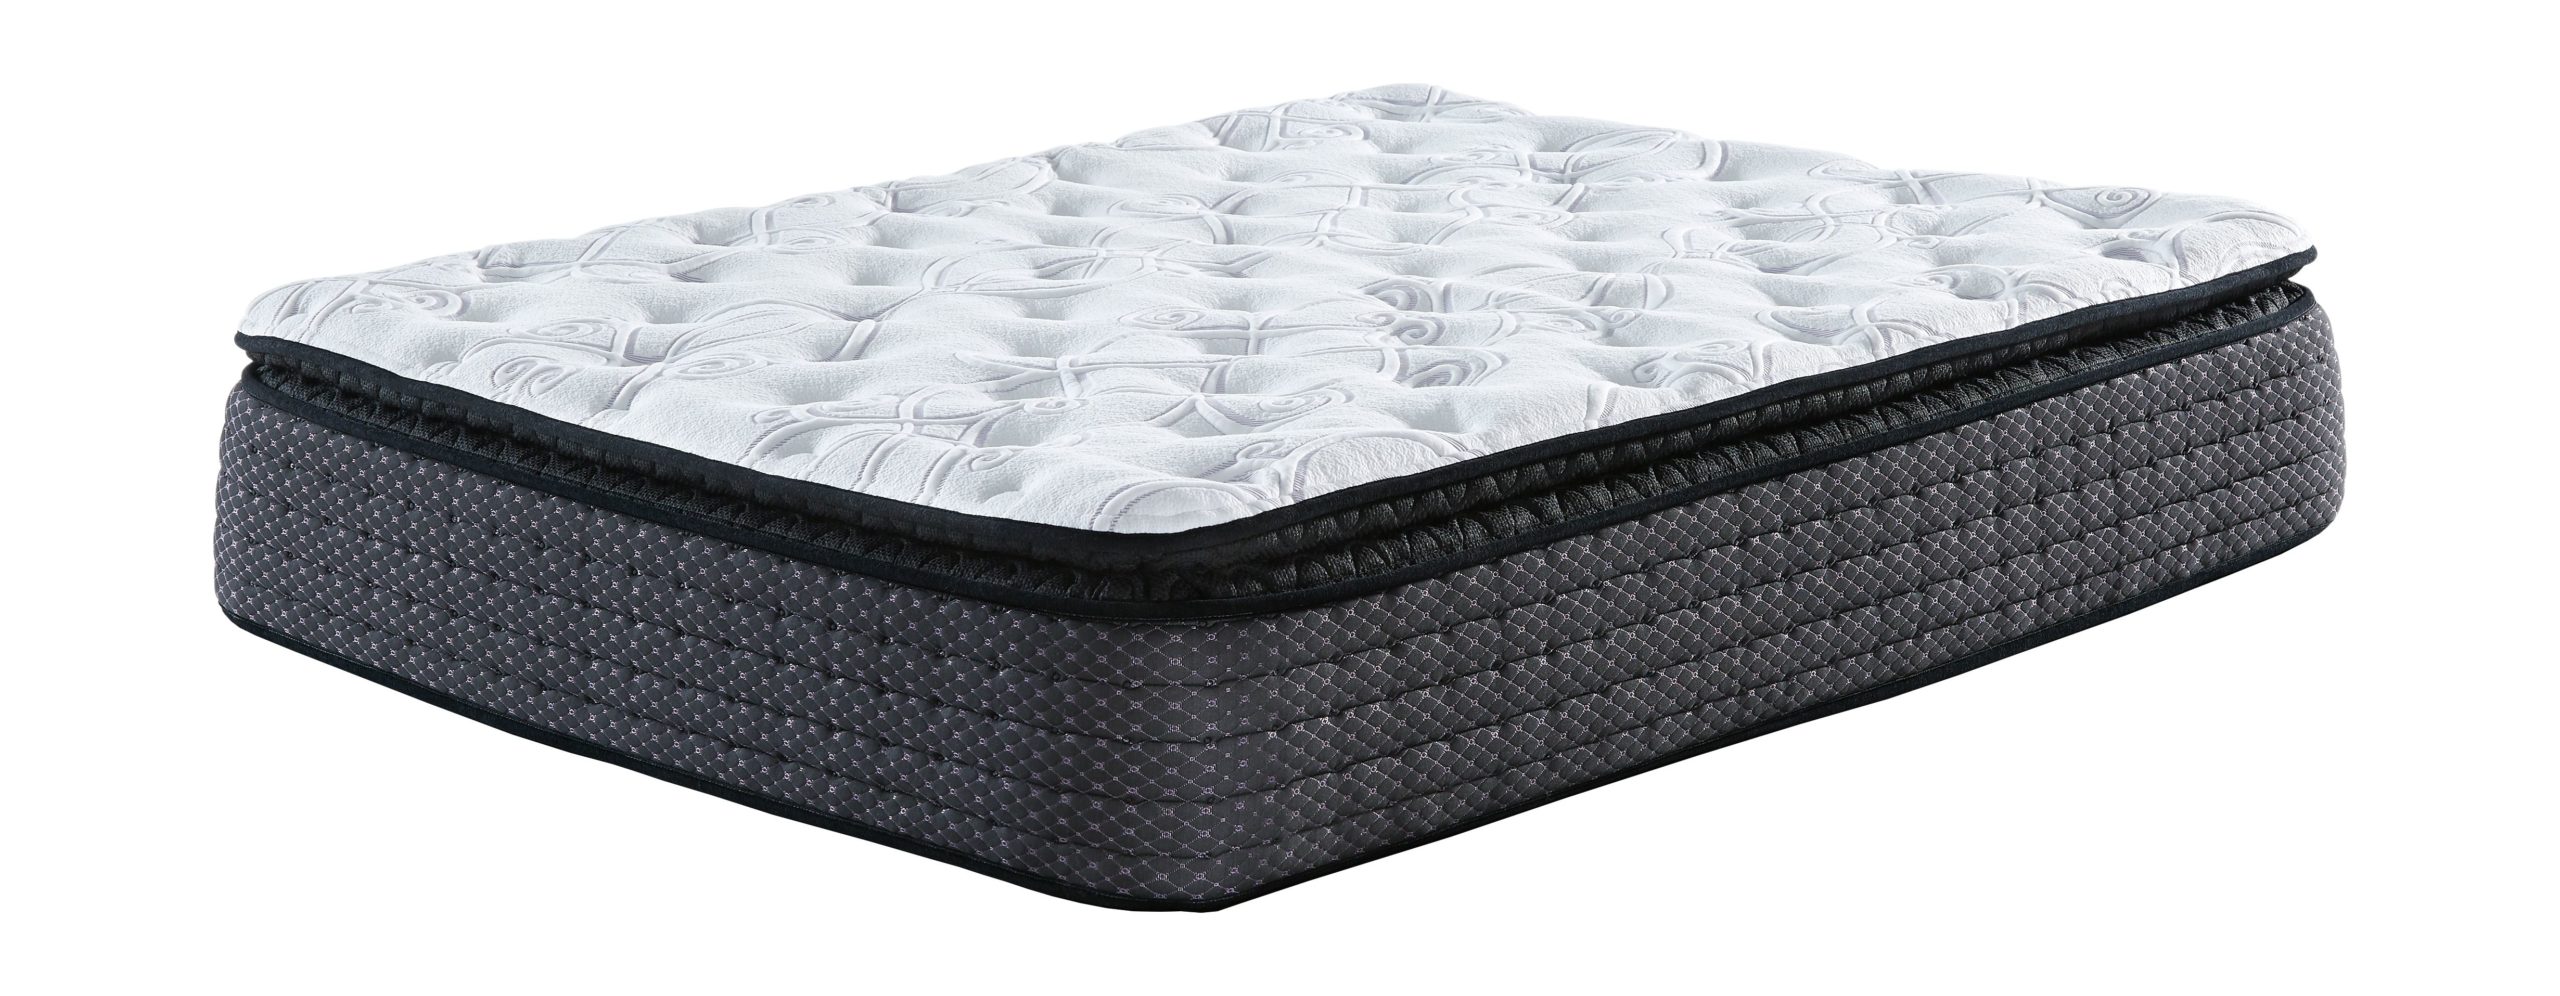 pillowtop full xl size mattress